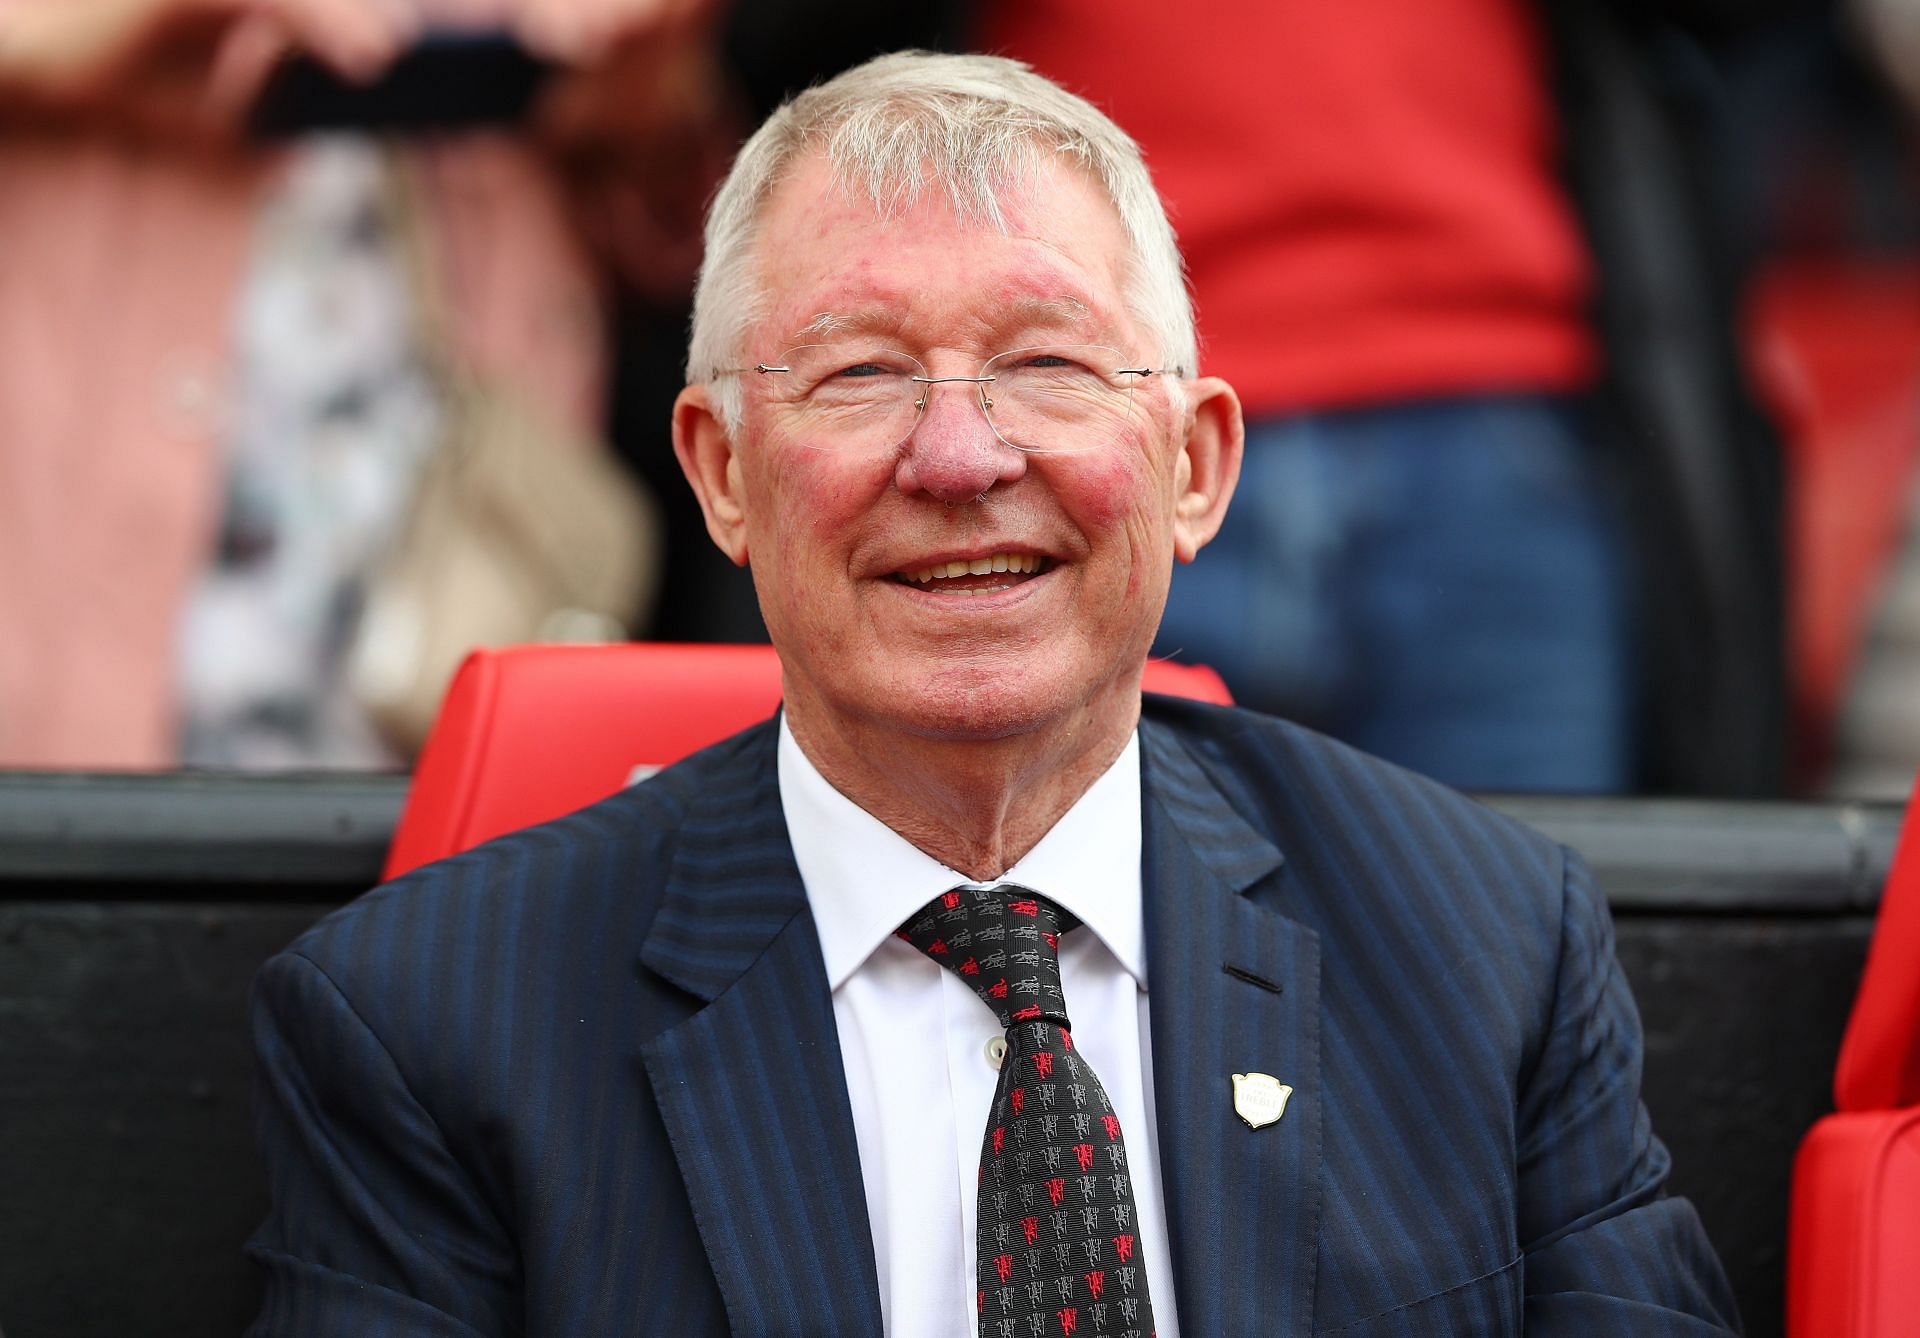 Sir Alex Ferguson led Manchester United to 13 Premier League titles.